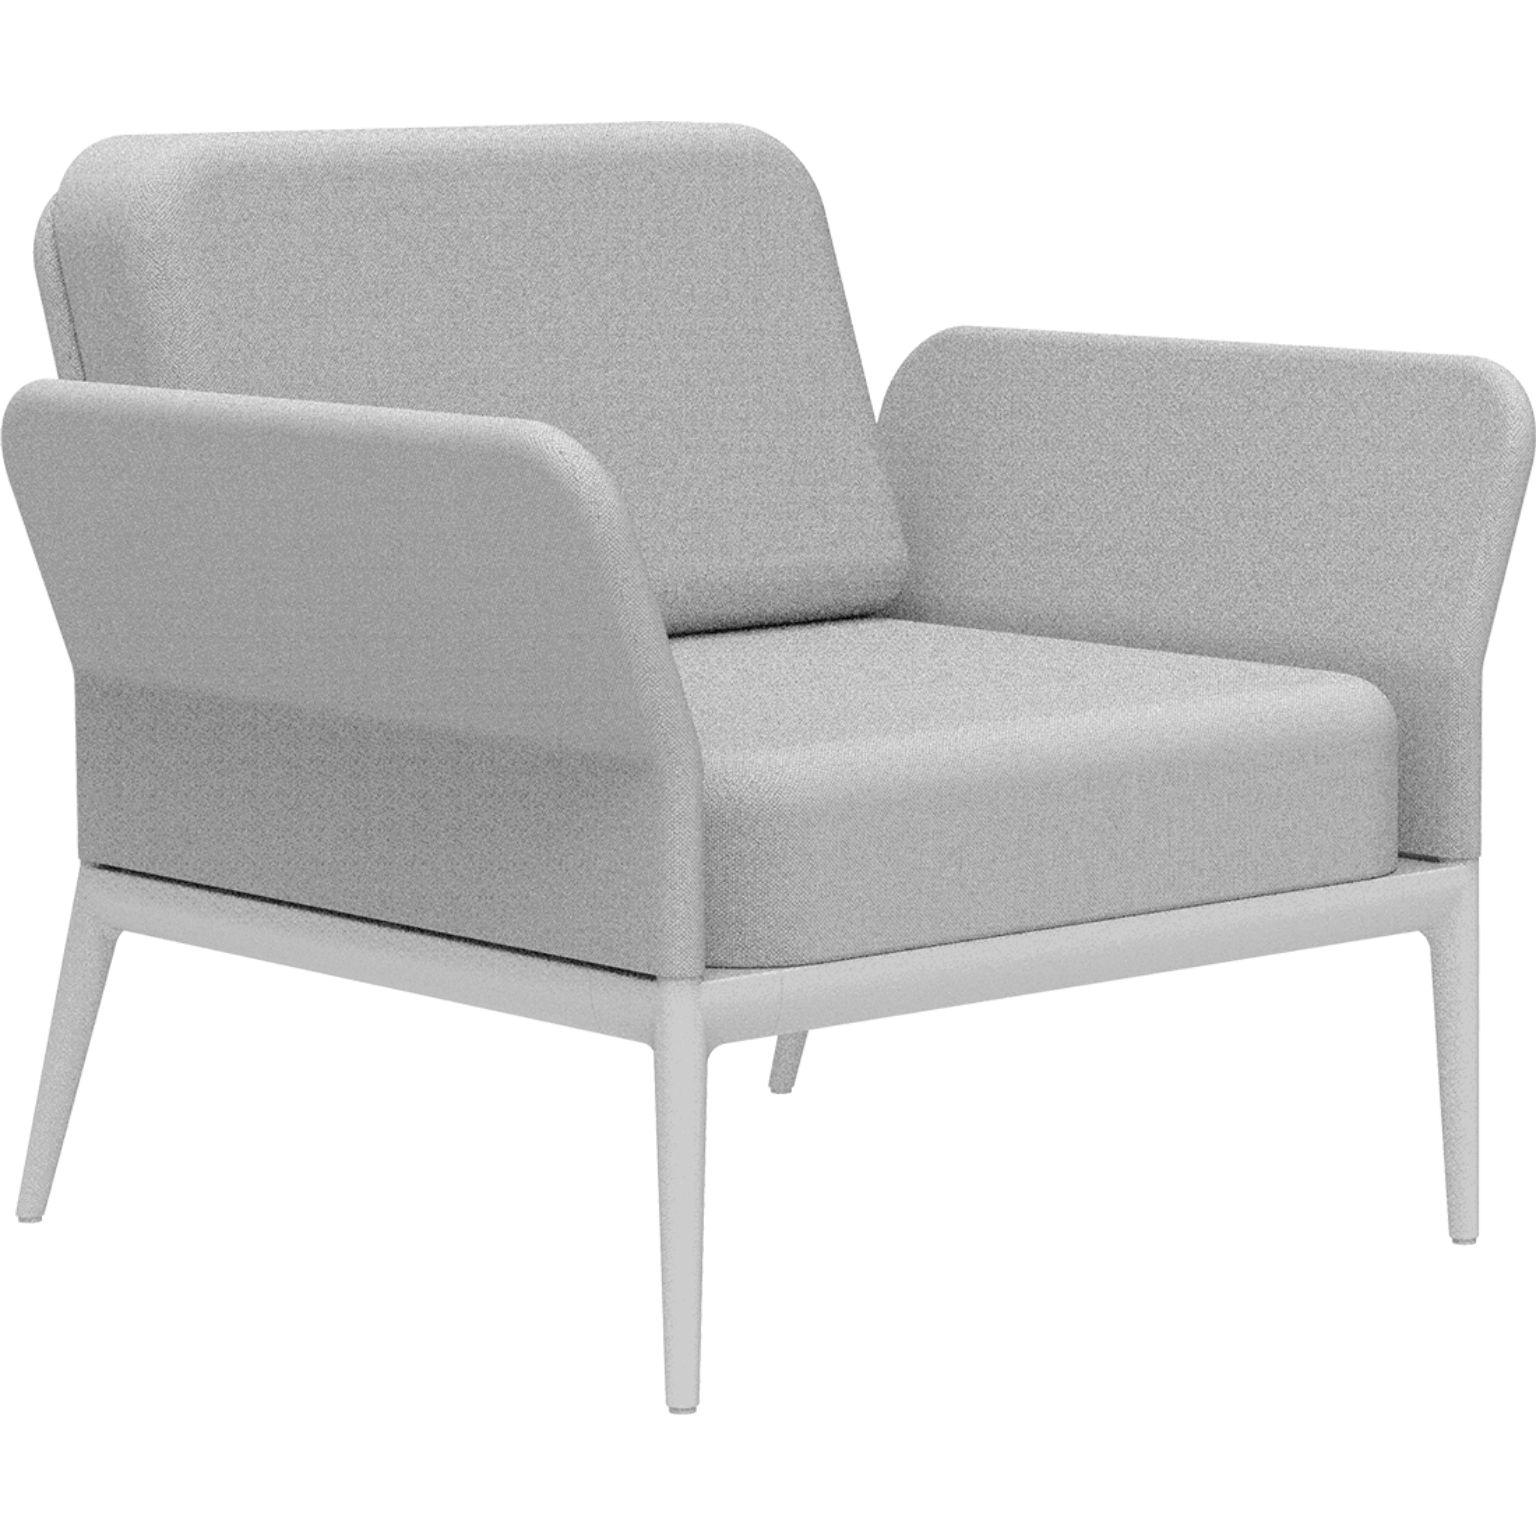 Housse Chaise longue blanche par MOWEE
Dimensions : D83 x L91 x H81 cm (hauteur d'assise 42 cm).
Matériau : Aluminium et rembourrage.
Poids : 20 kg.
Également disponible en différentes couleurs et finitions. 

Une collection incontournable pour sa